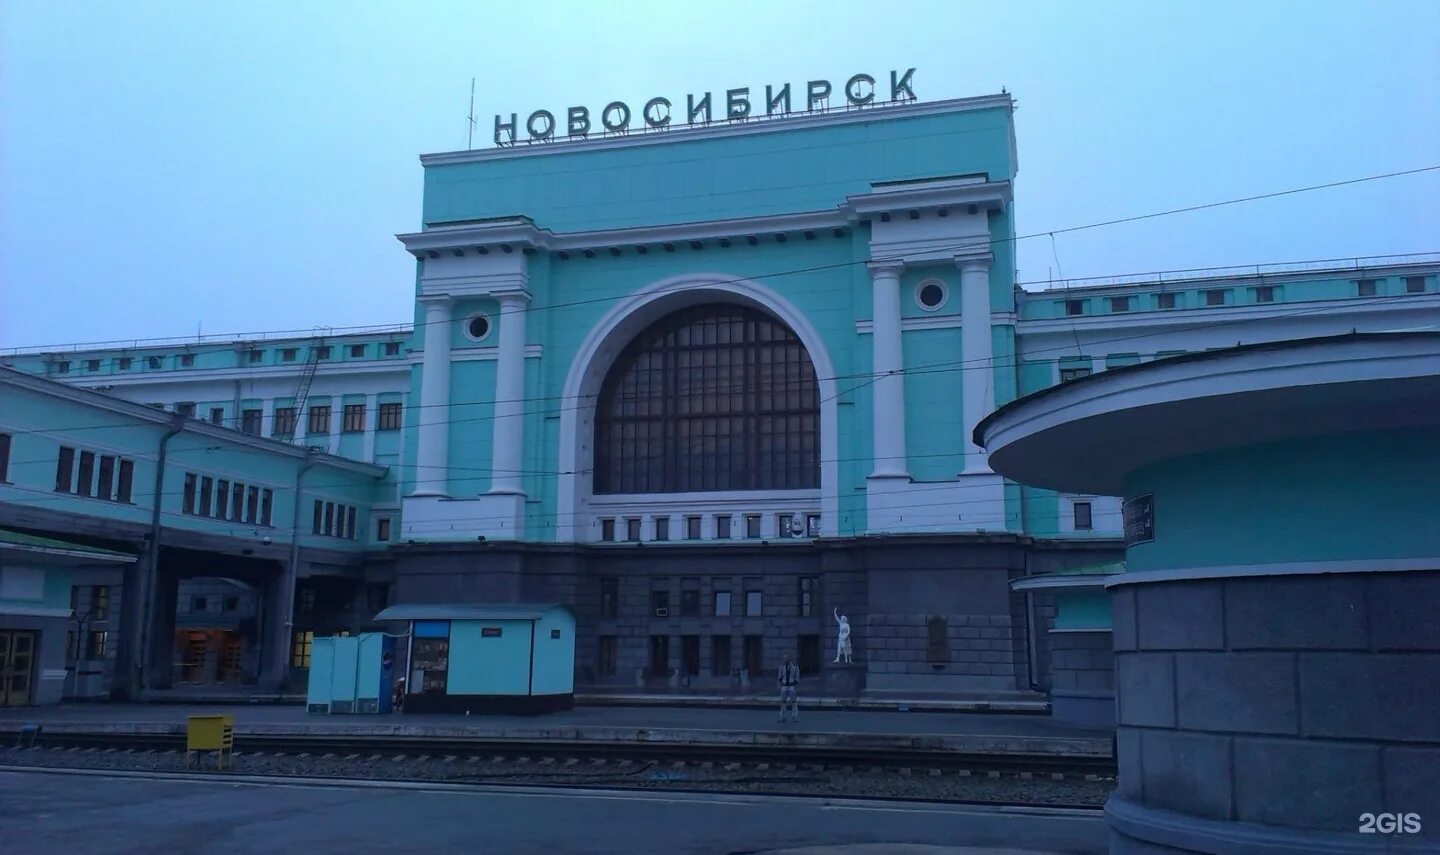 Ж/Д вокзал Новосибирск. Станция Новосибирск-главный, Новосибирск. ЖД вокзал Новосибирск главный. Г Новосибирск ЖД вокзал главный.